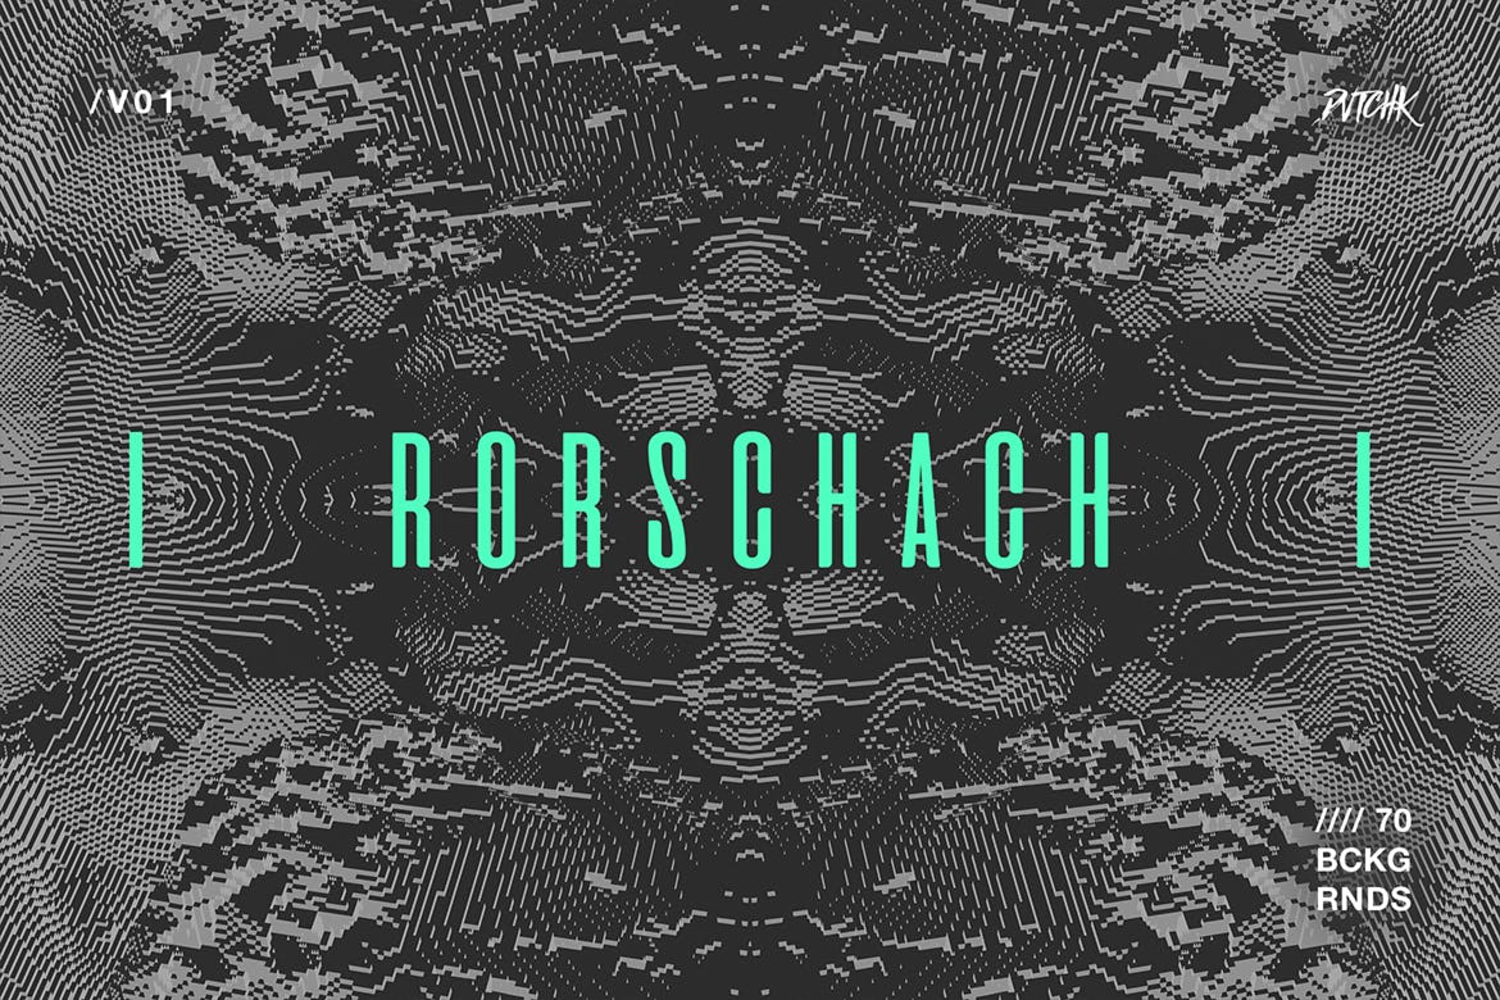 5383 玻璃裂纹万花筒像素点故障艺术纹理的背景图素材-Rorschach Experimental Glitch Backgrounds V02@GOOODME.COM